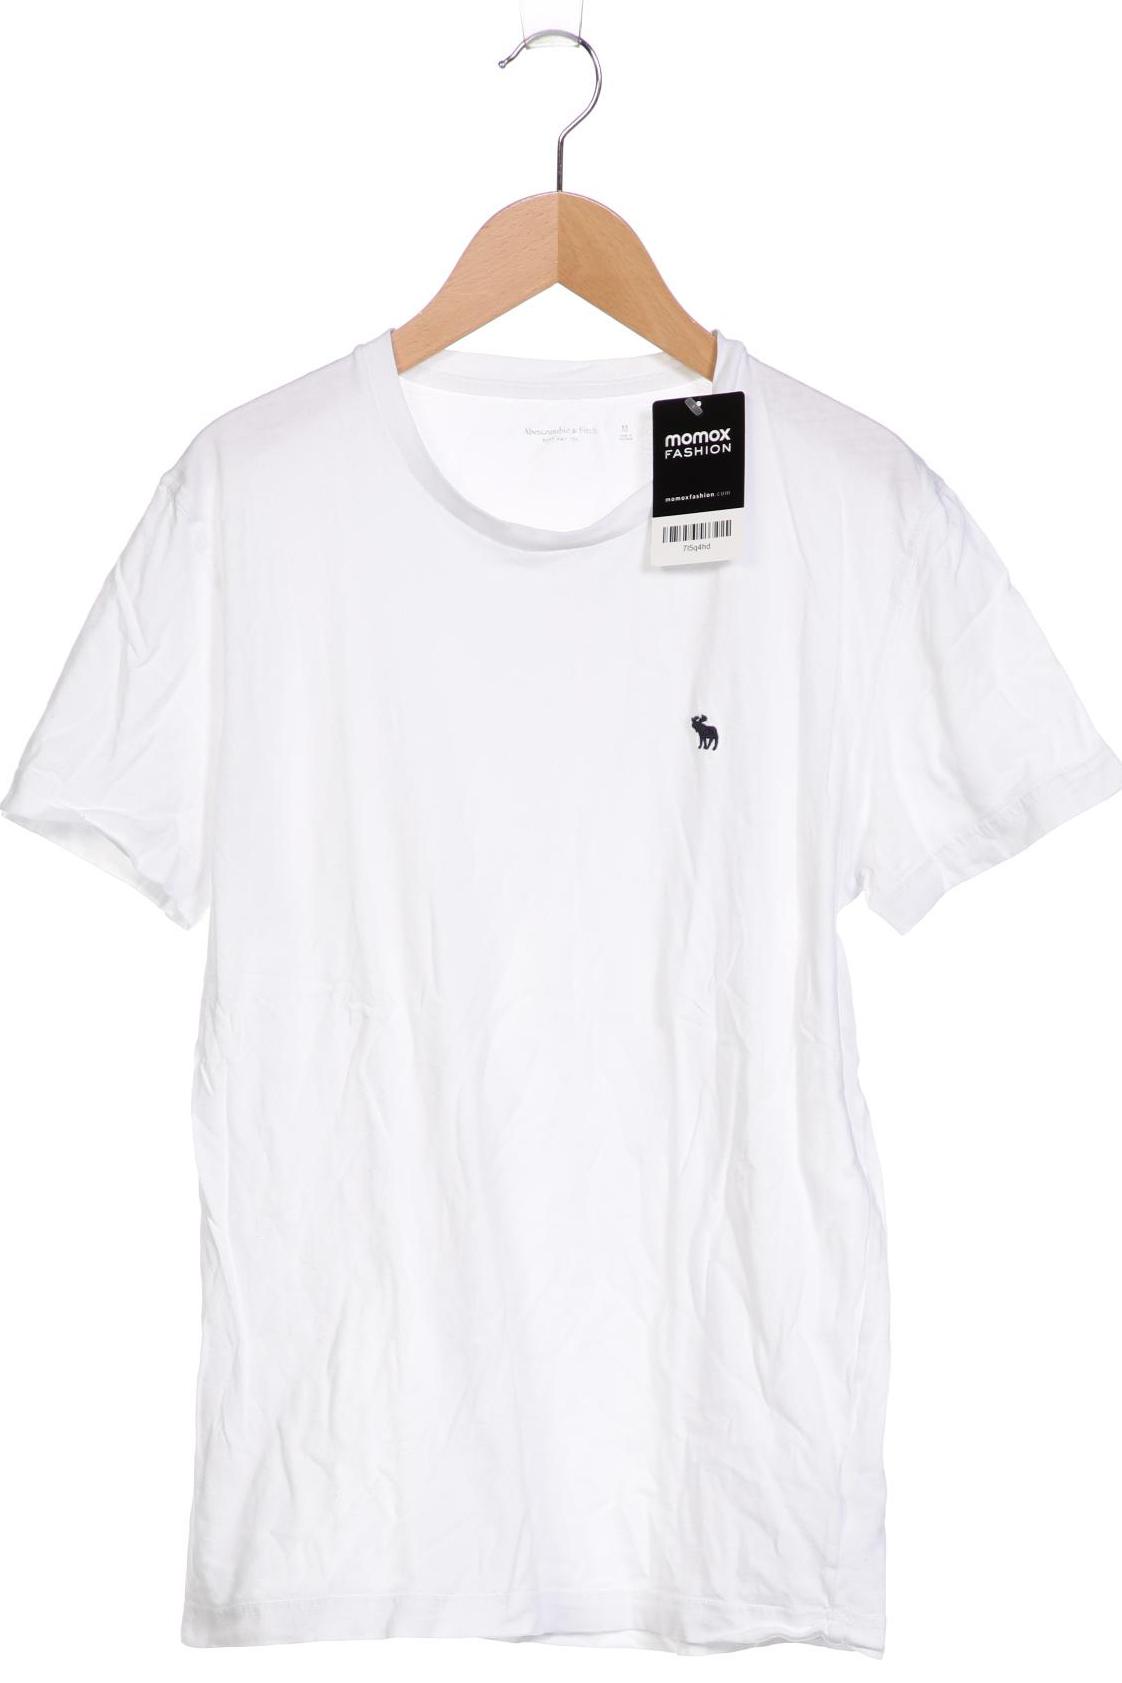 Abercrombie & Fitch Herren T-Shirt, weiß, Gr. 48 von Abercrombie & Fitch